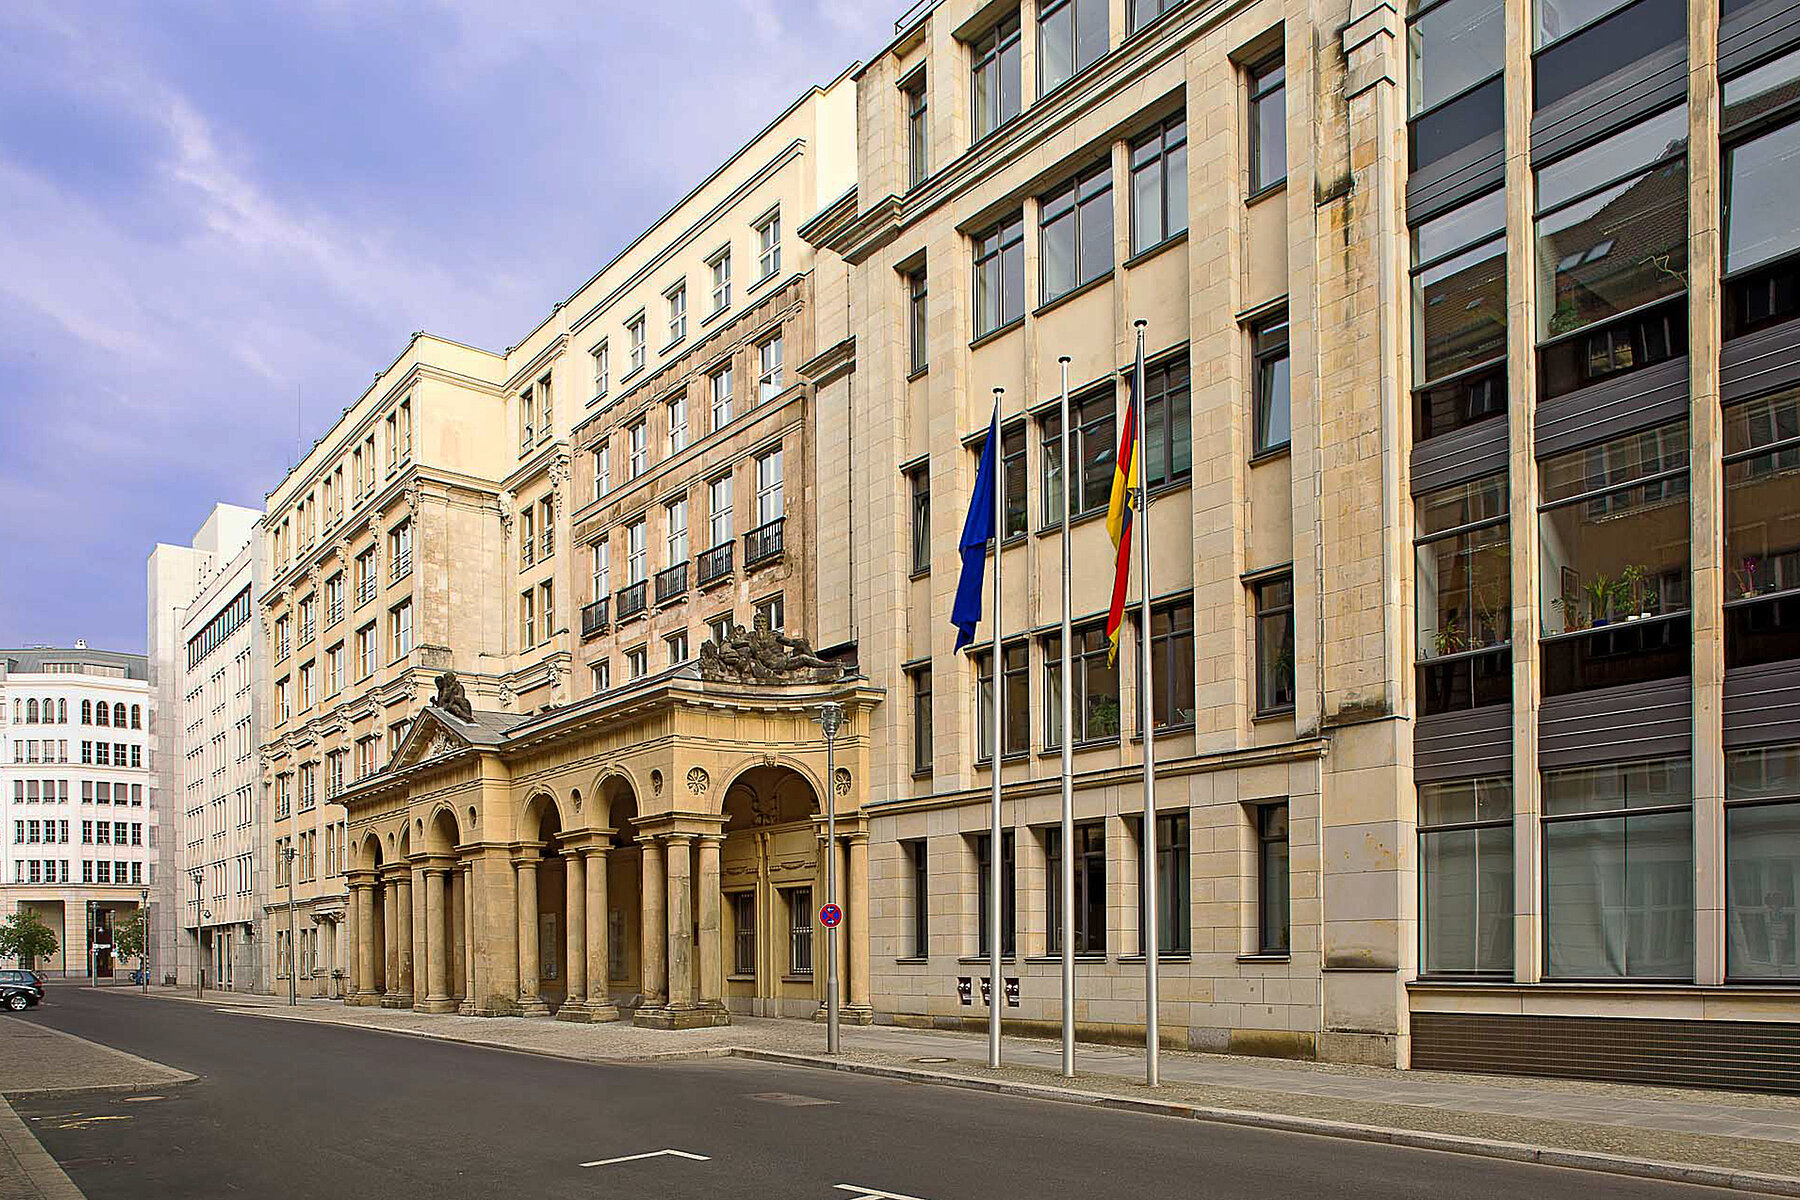 Mohrenstraße mit Häusern am linken Straßenrand. Mittig das heutige Justizministerium mit Säulen im Eingangsbereich.